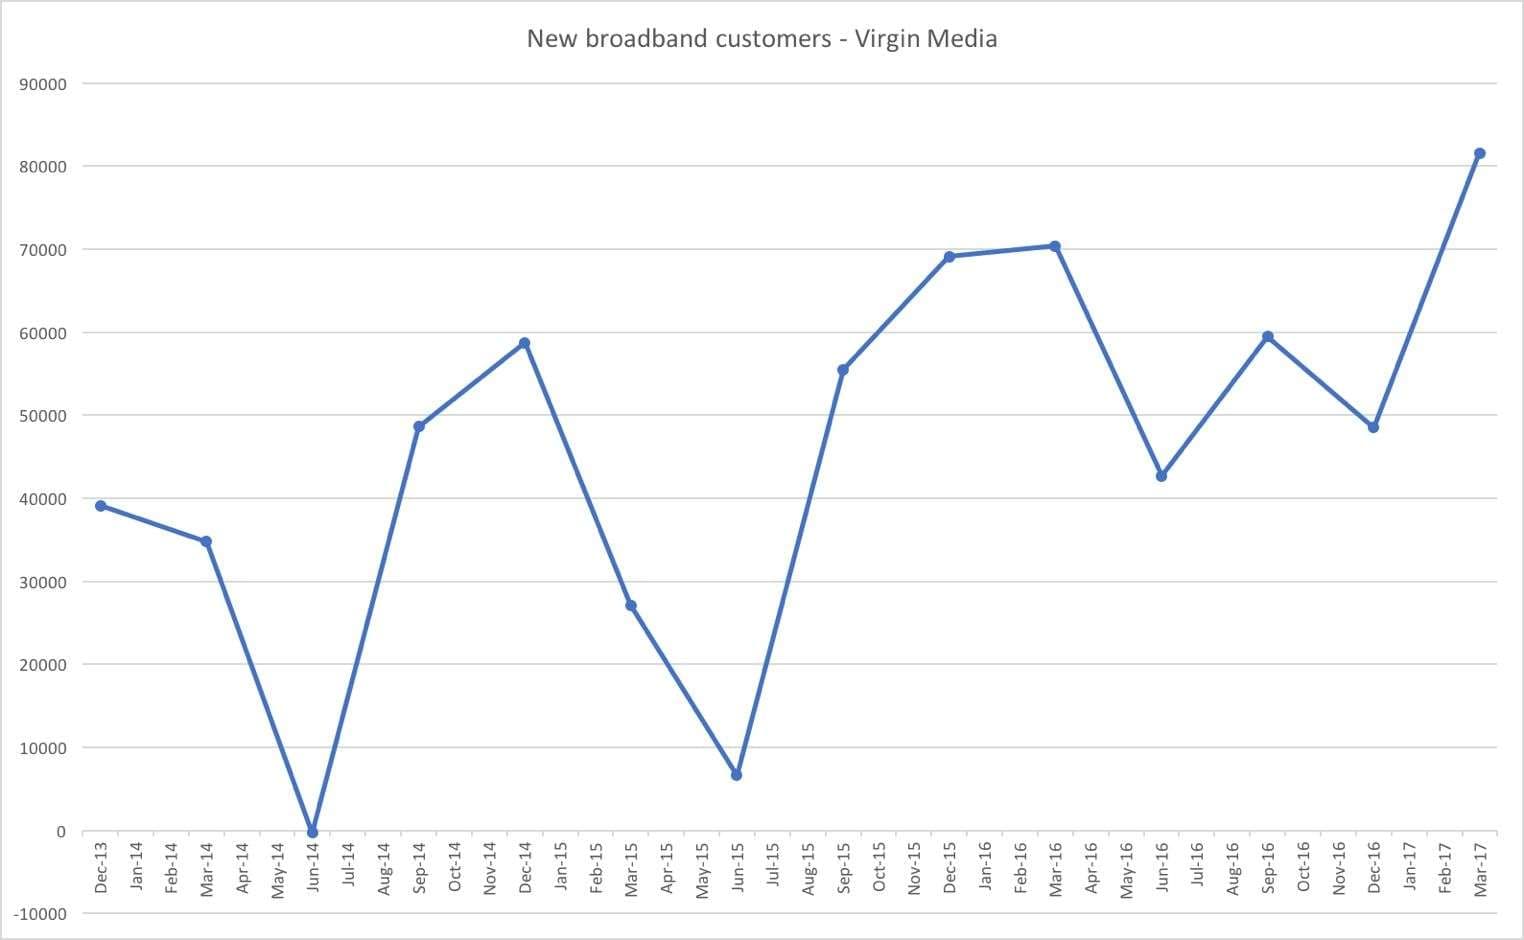 Virgin Media new broadband customers